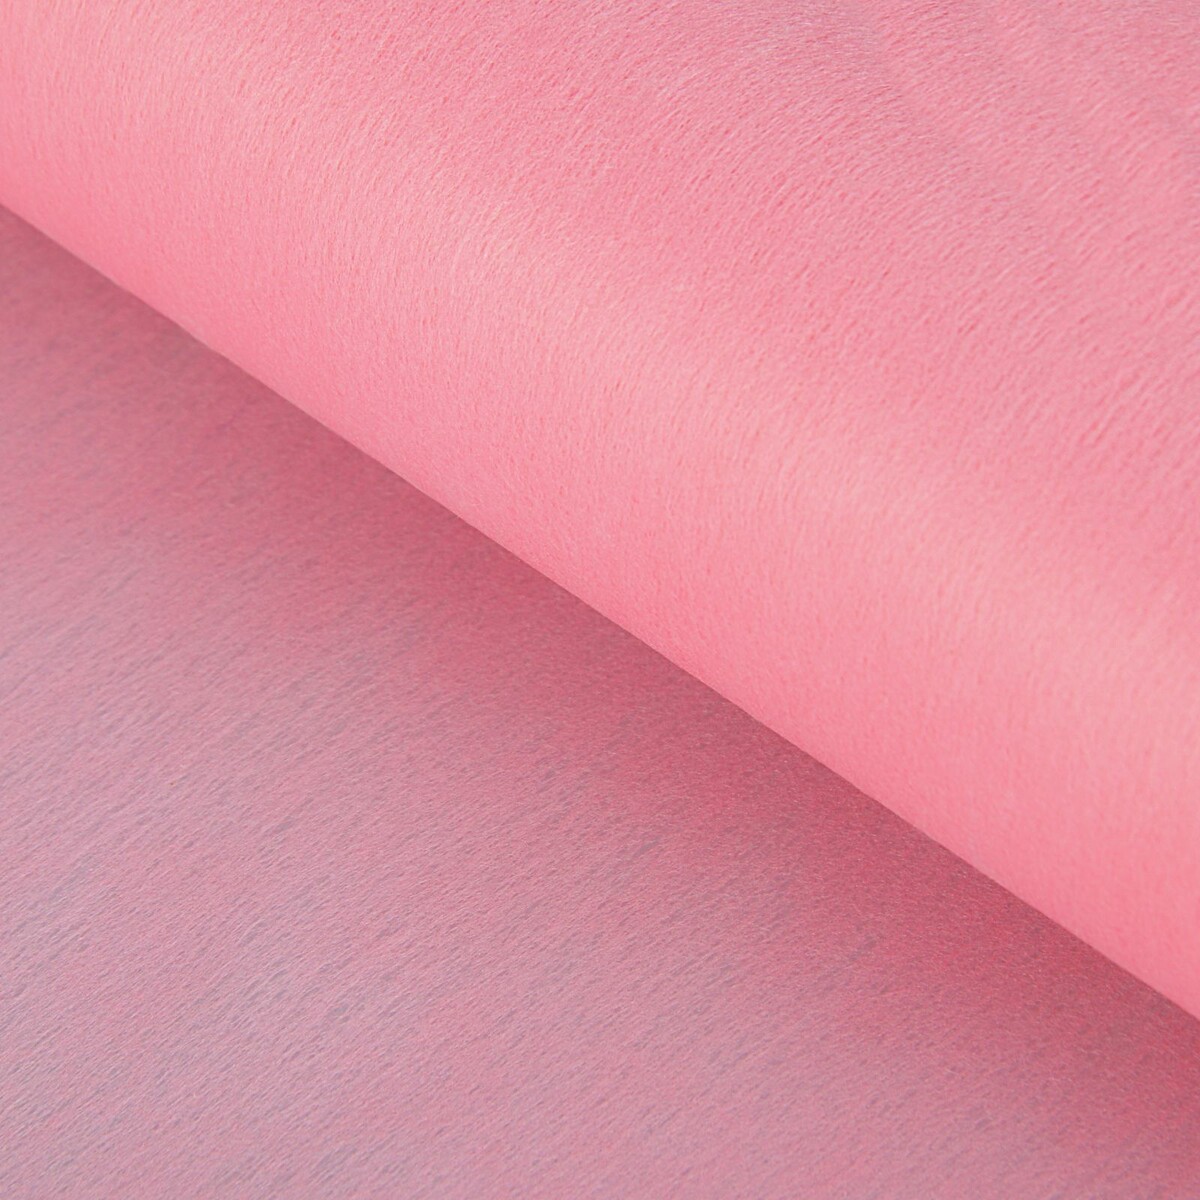 Фетр для упаковок и поделок, однотонный, розовый, двусторонний, рулон 1шт., 0,5 x 20 м